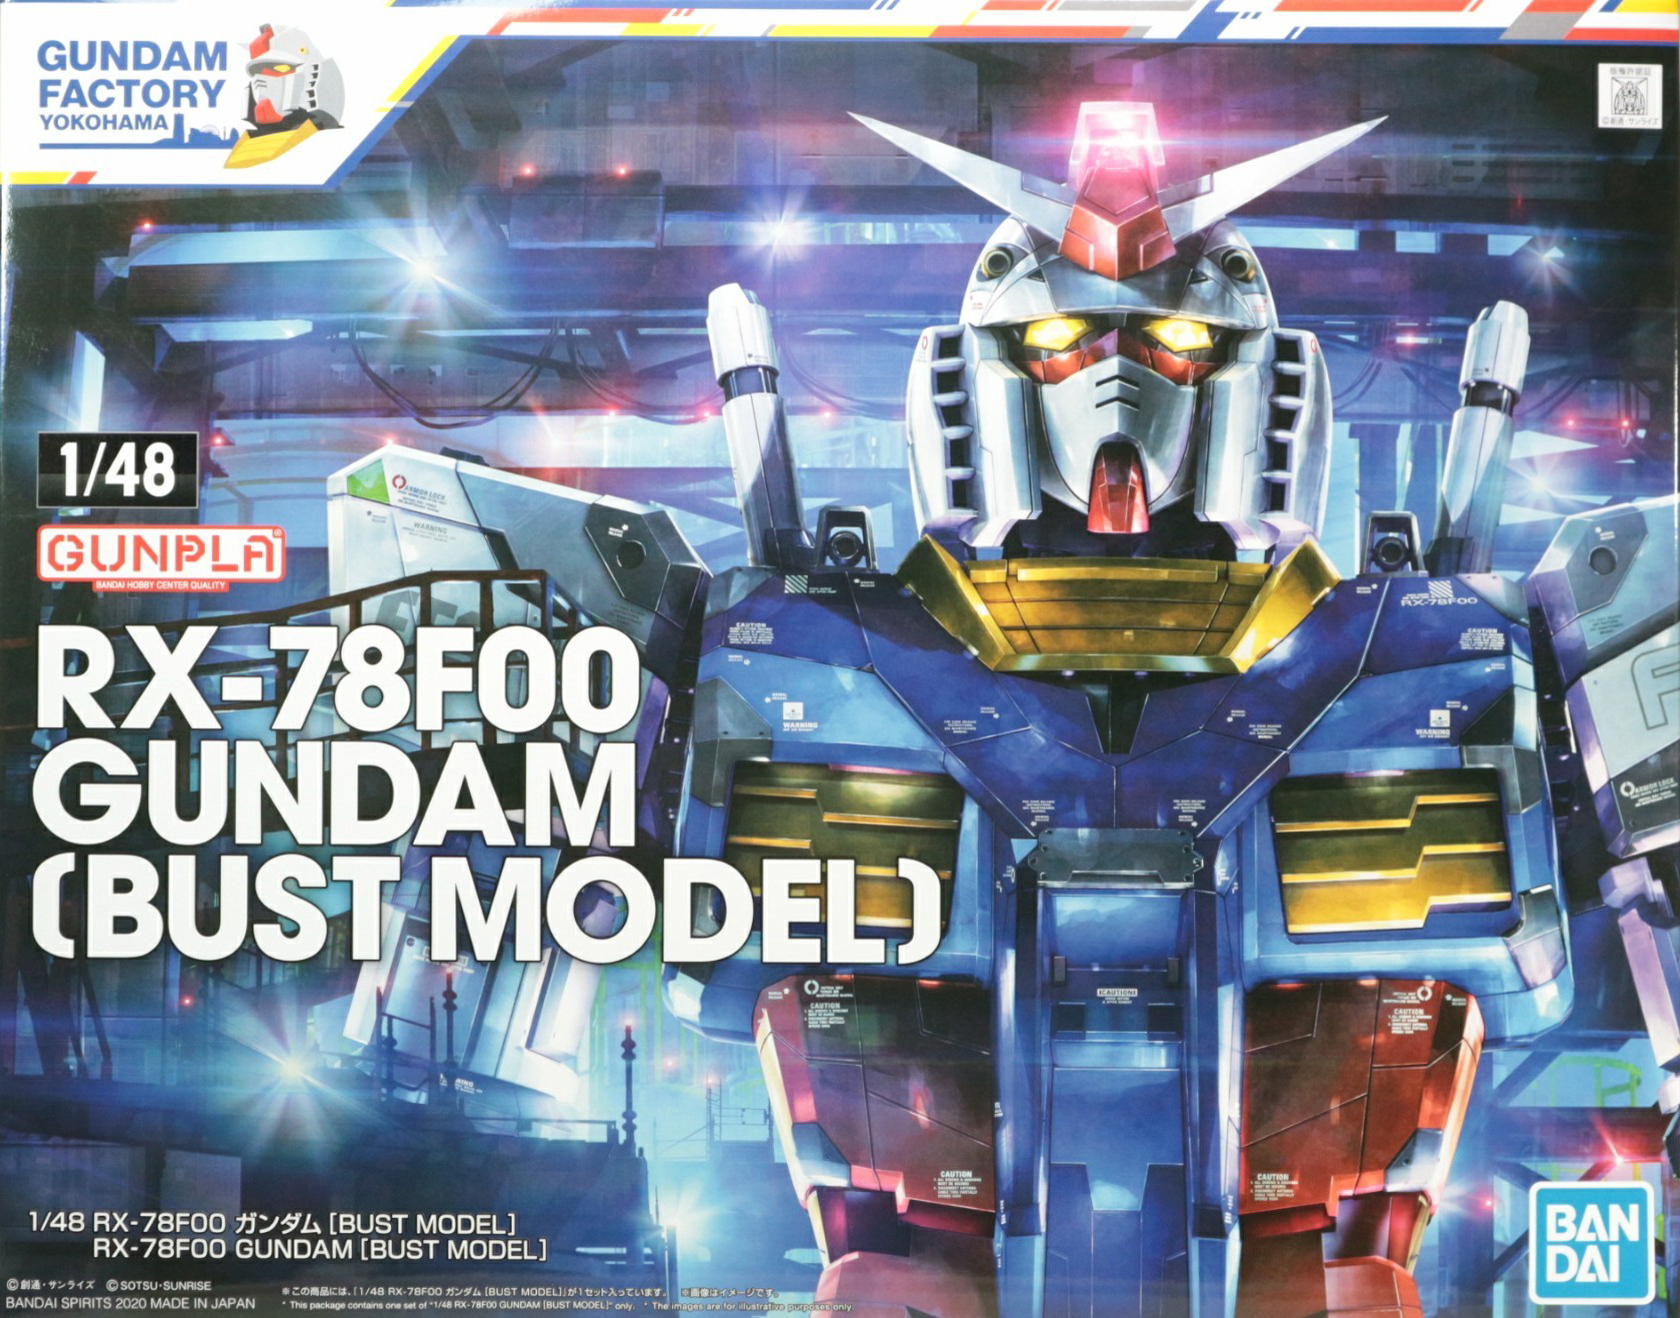 1/48 RX-78F00 Gundam (Bust Model) | Gunpla Wiki | Fandom